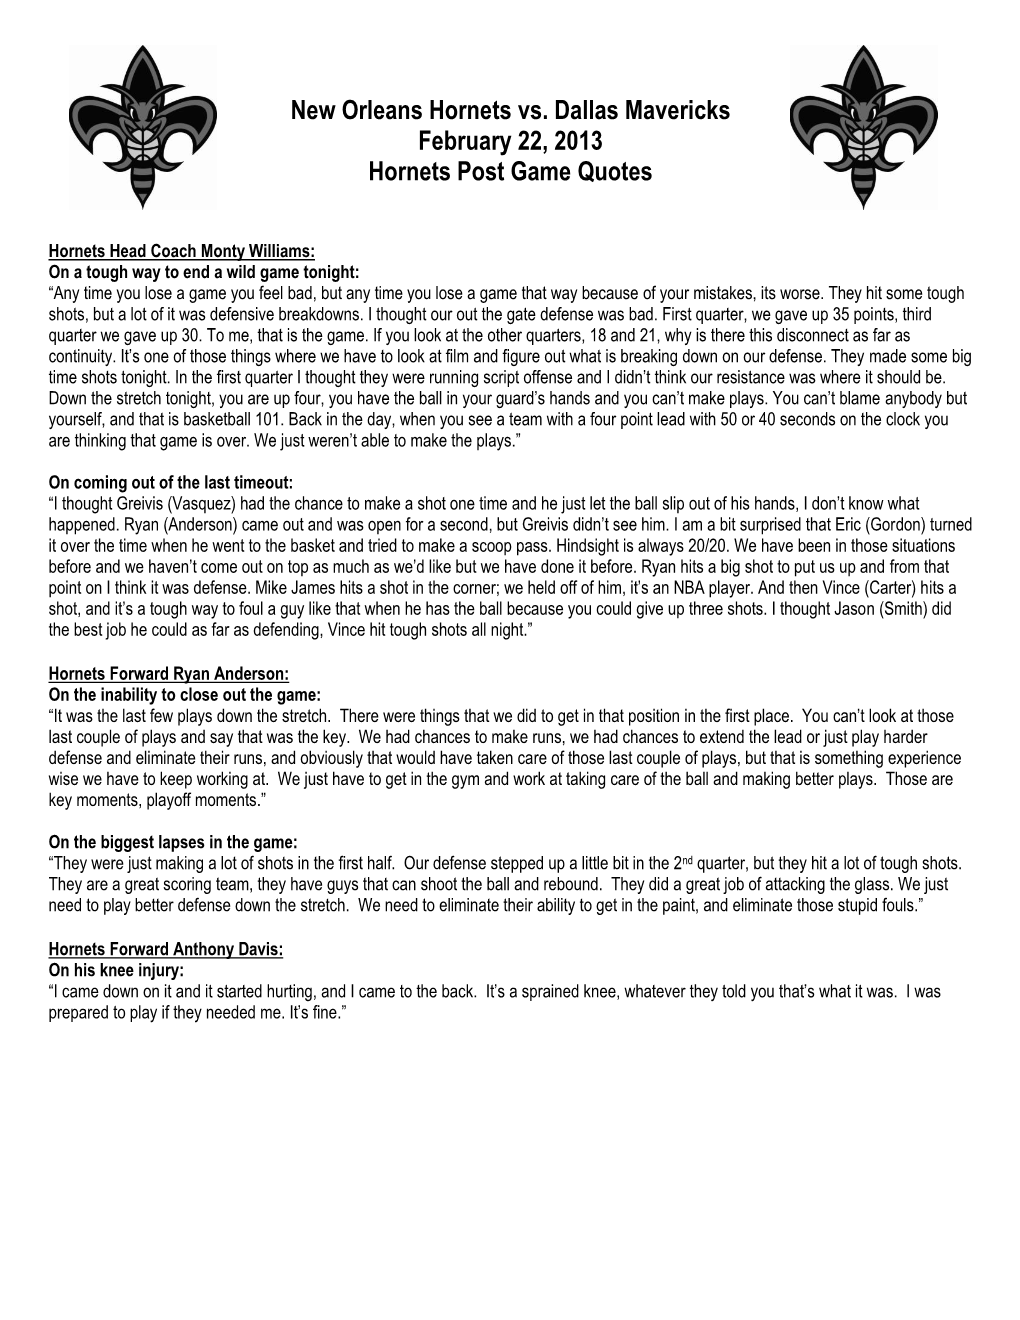 New Orleans Hornets Vs. Dallas Mavericks February 22, 2013 Hornets Post Game Quotes